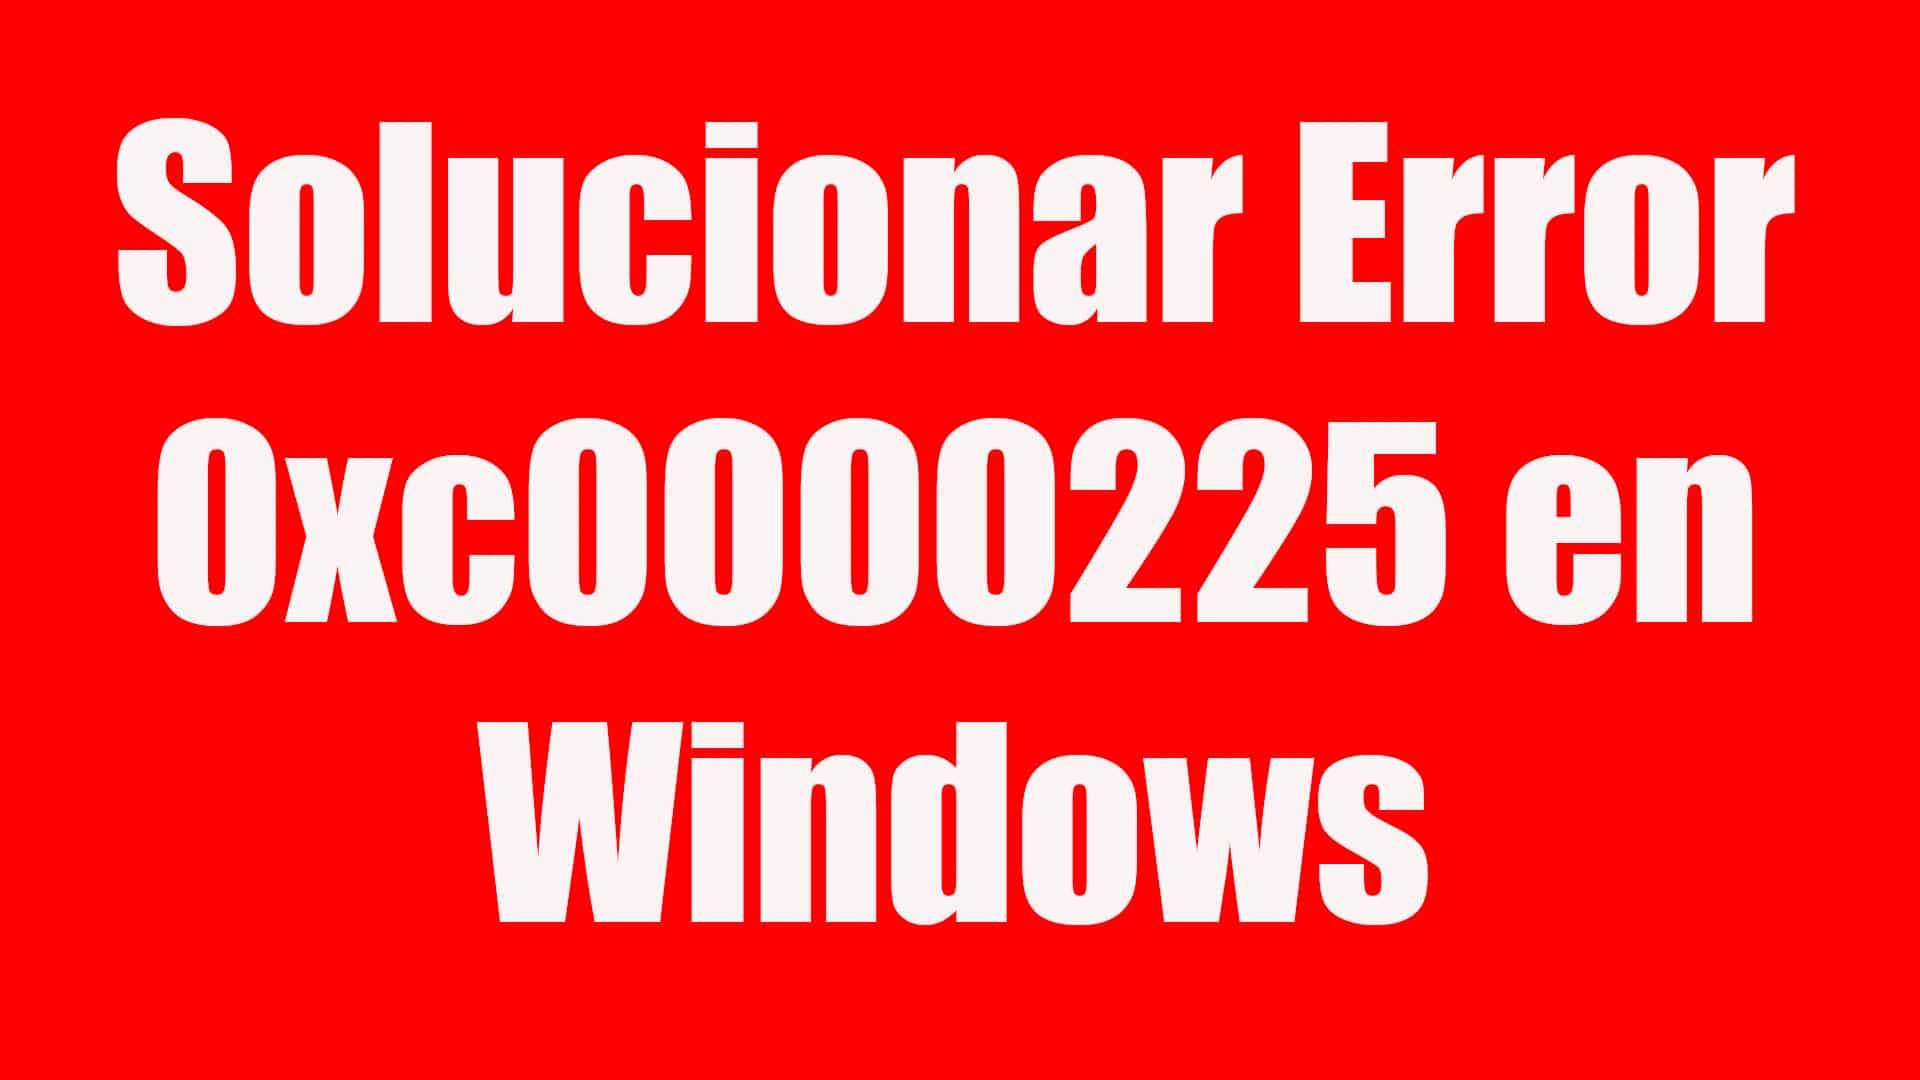 Como solucionar error 0xc0000225 de Windows